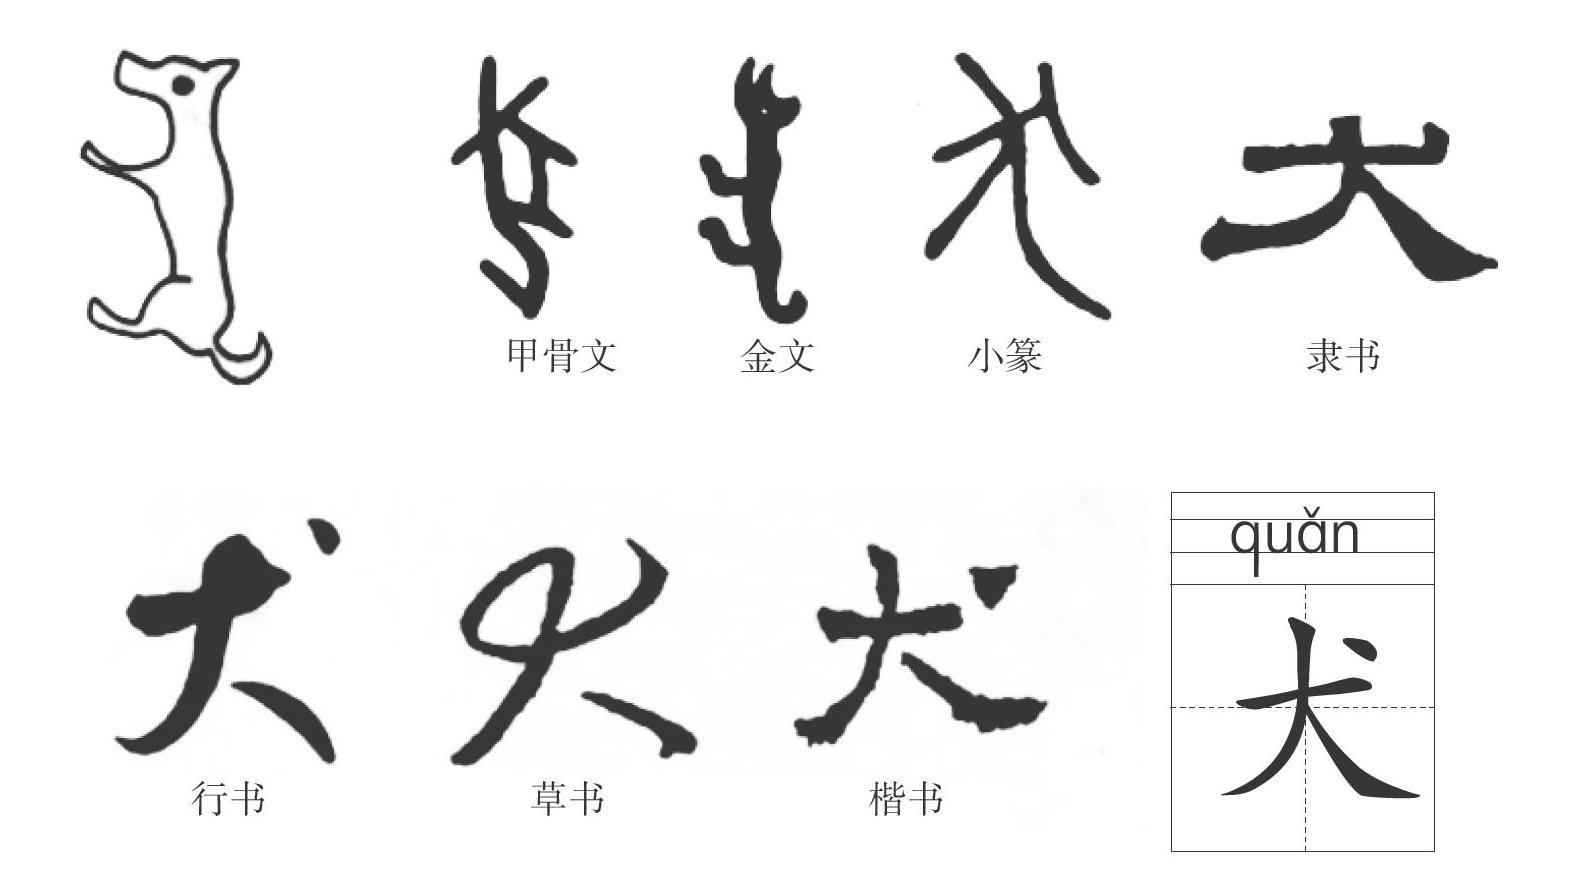 神奇的汉字 参考网